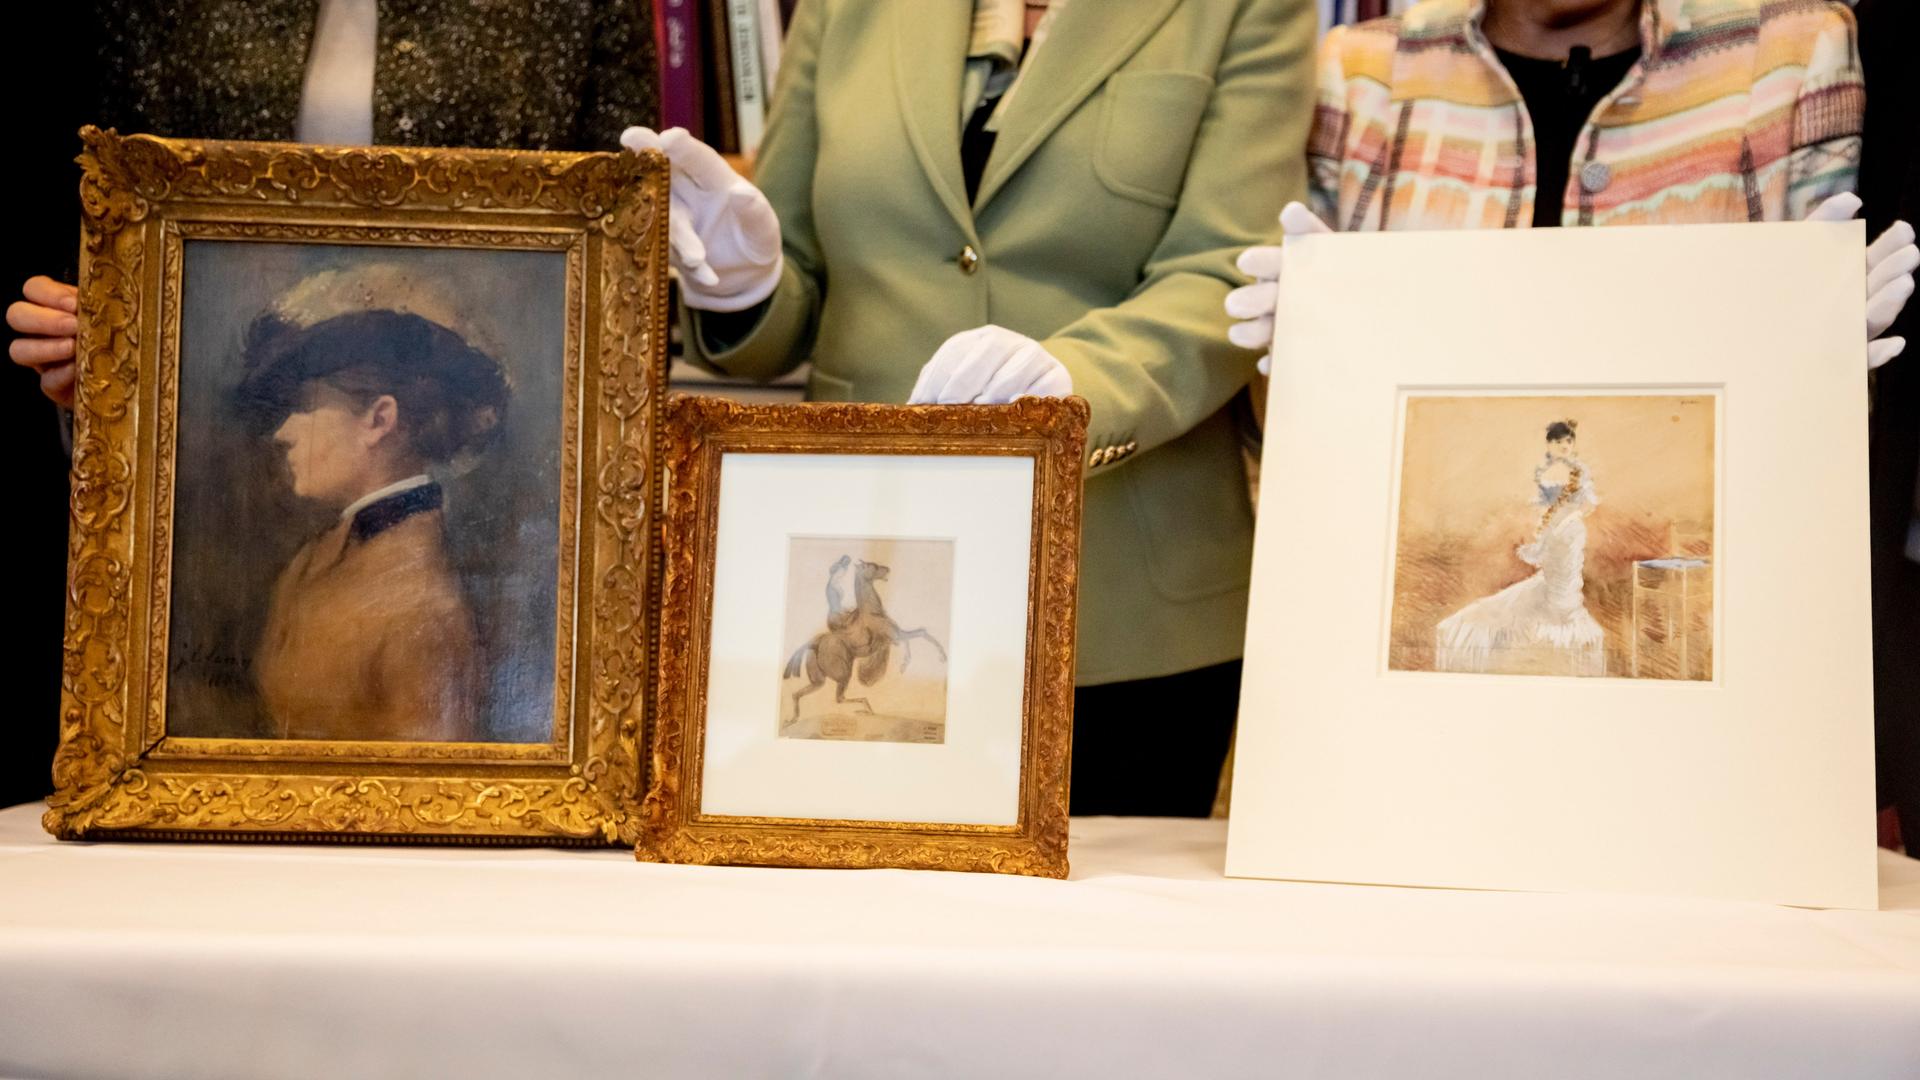 Drei als NS-Raubkunst identifizierte Kunstwerke: das Aquarell "Dame im Abendkleid" (r) und das Gemälde "Porträt einer Dame" (l) von Jean-Louis Forain, beide aus dem Bestand Cornelius Gurlitts, sowie die Zeichnung "Amazone mit aufbäumendem Pferd" (M) von Constantin Guys, welche zuletzt in Privatbesitz war.